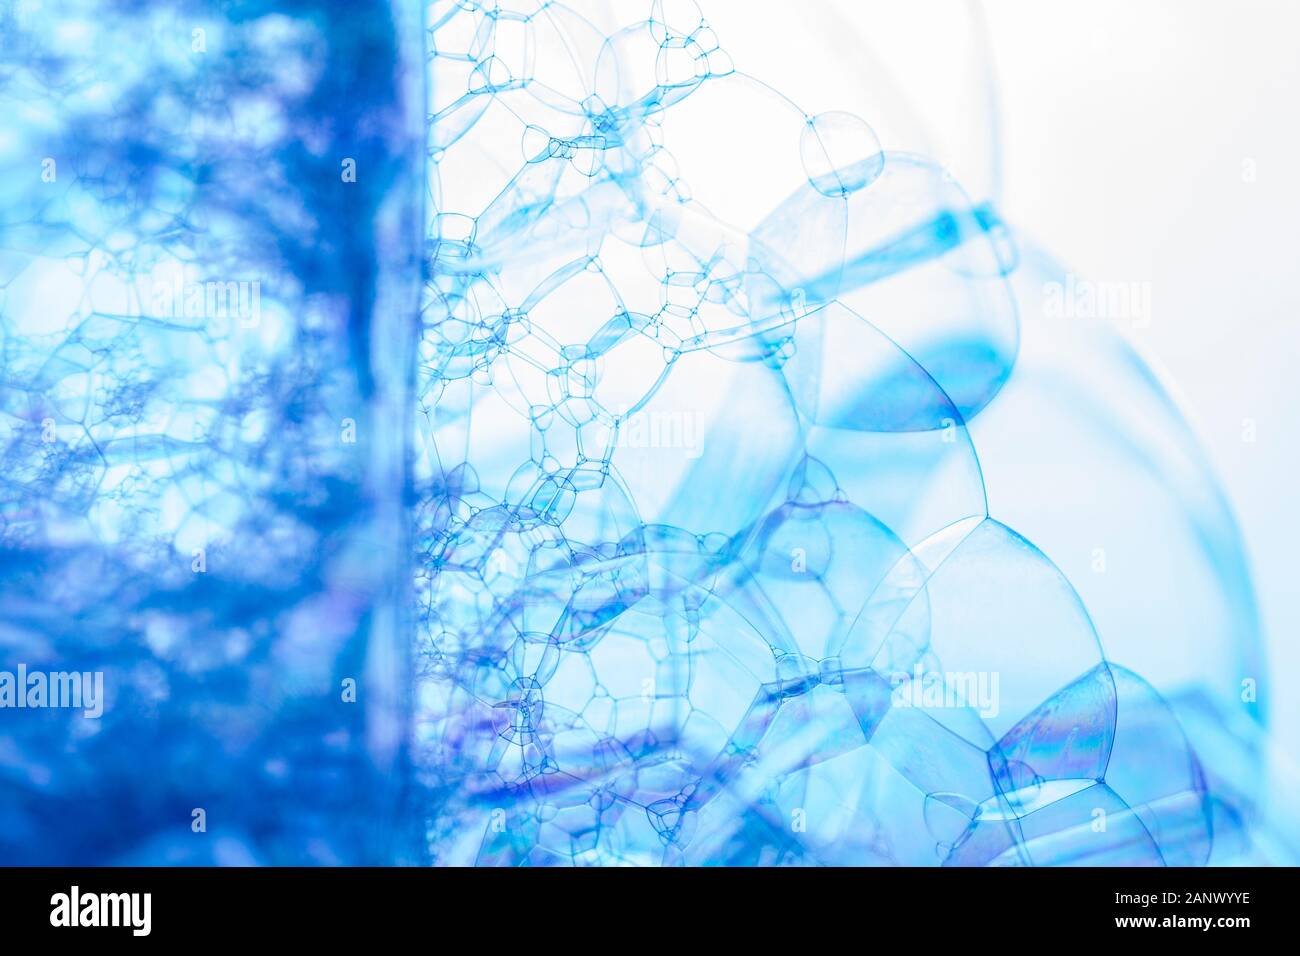 Kreative Zusammenfassung Hintergrund der Kette von Bläschen Struktur in blauen Farbtönen gemacht Stockfoto